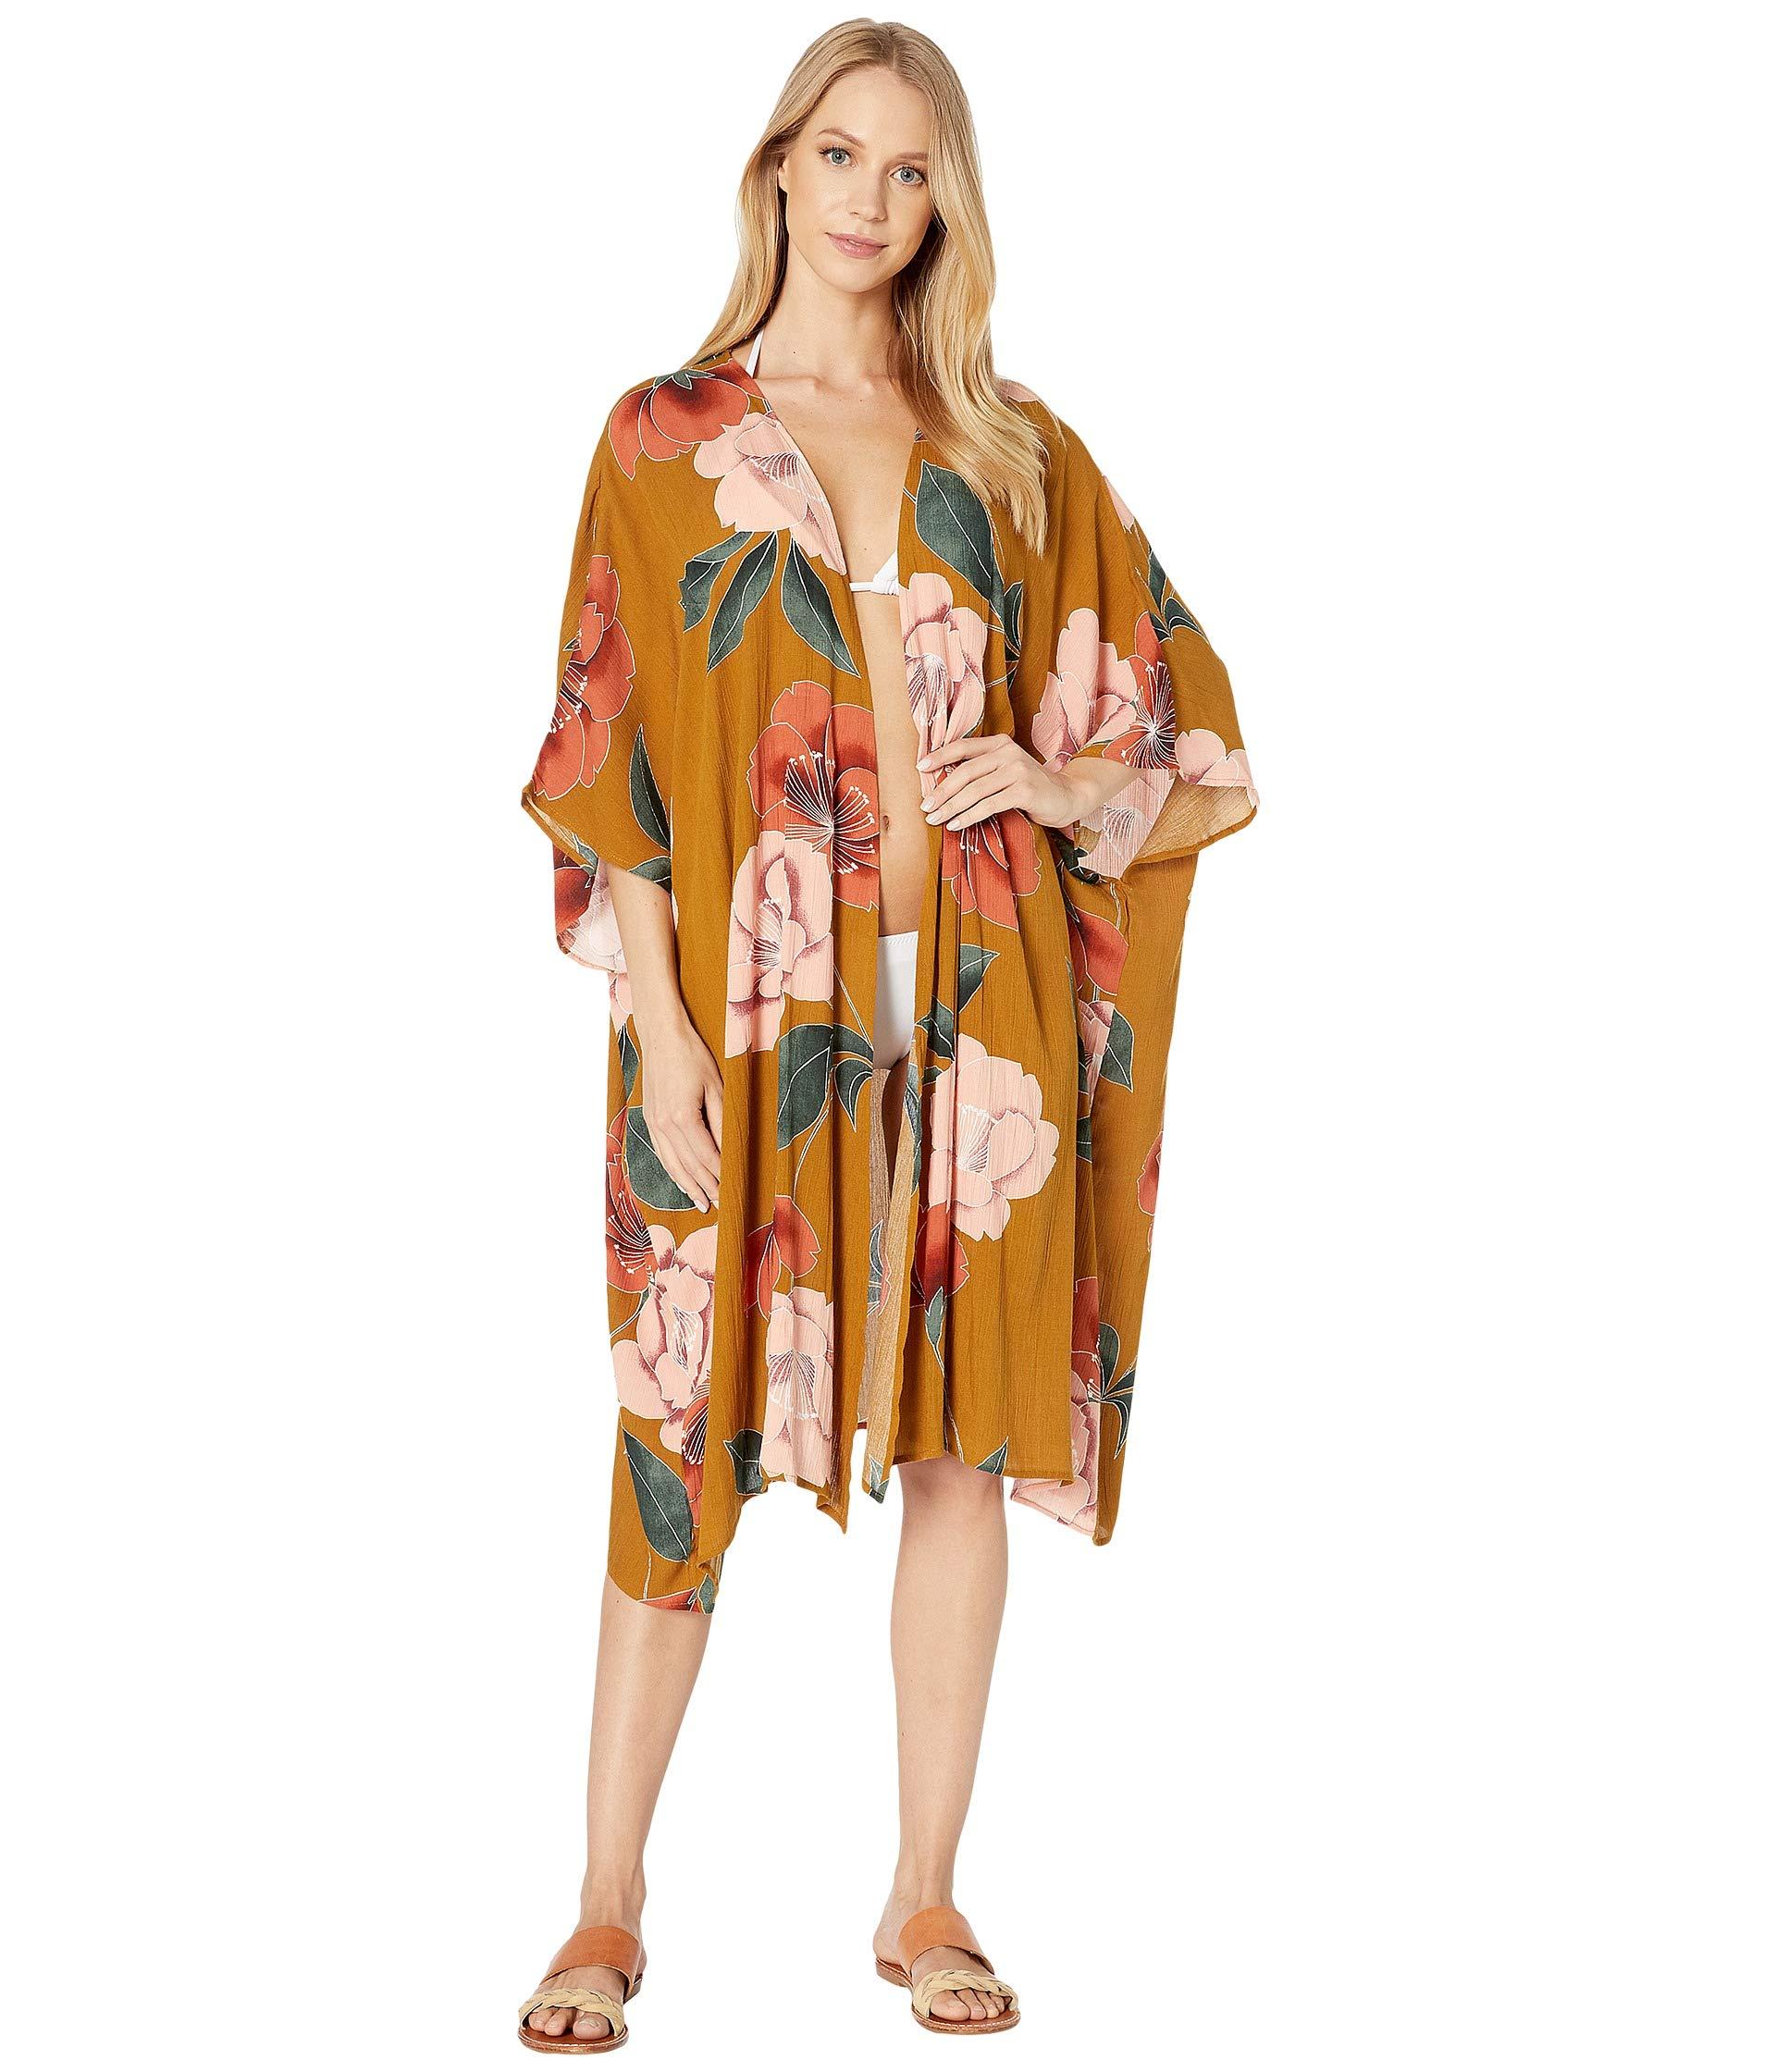 O'neill Sportswear Synthetic Kimberly Kimono Cover-up in Tan (Orange ...